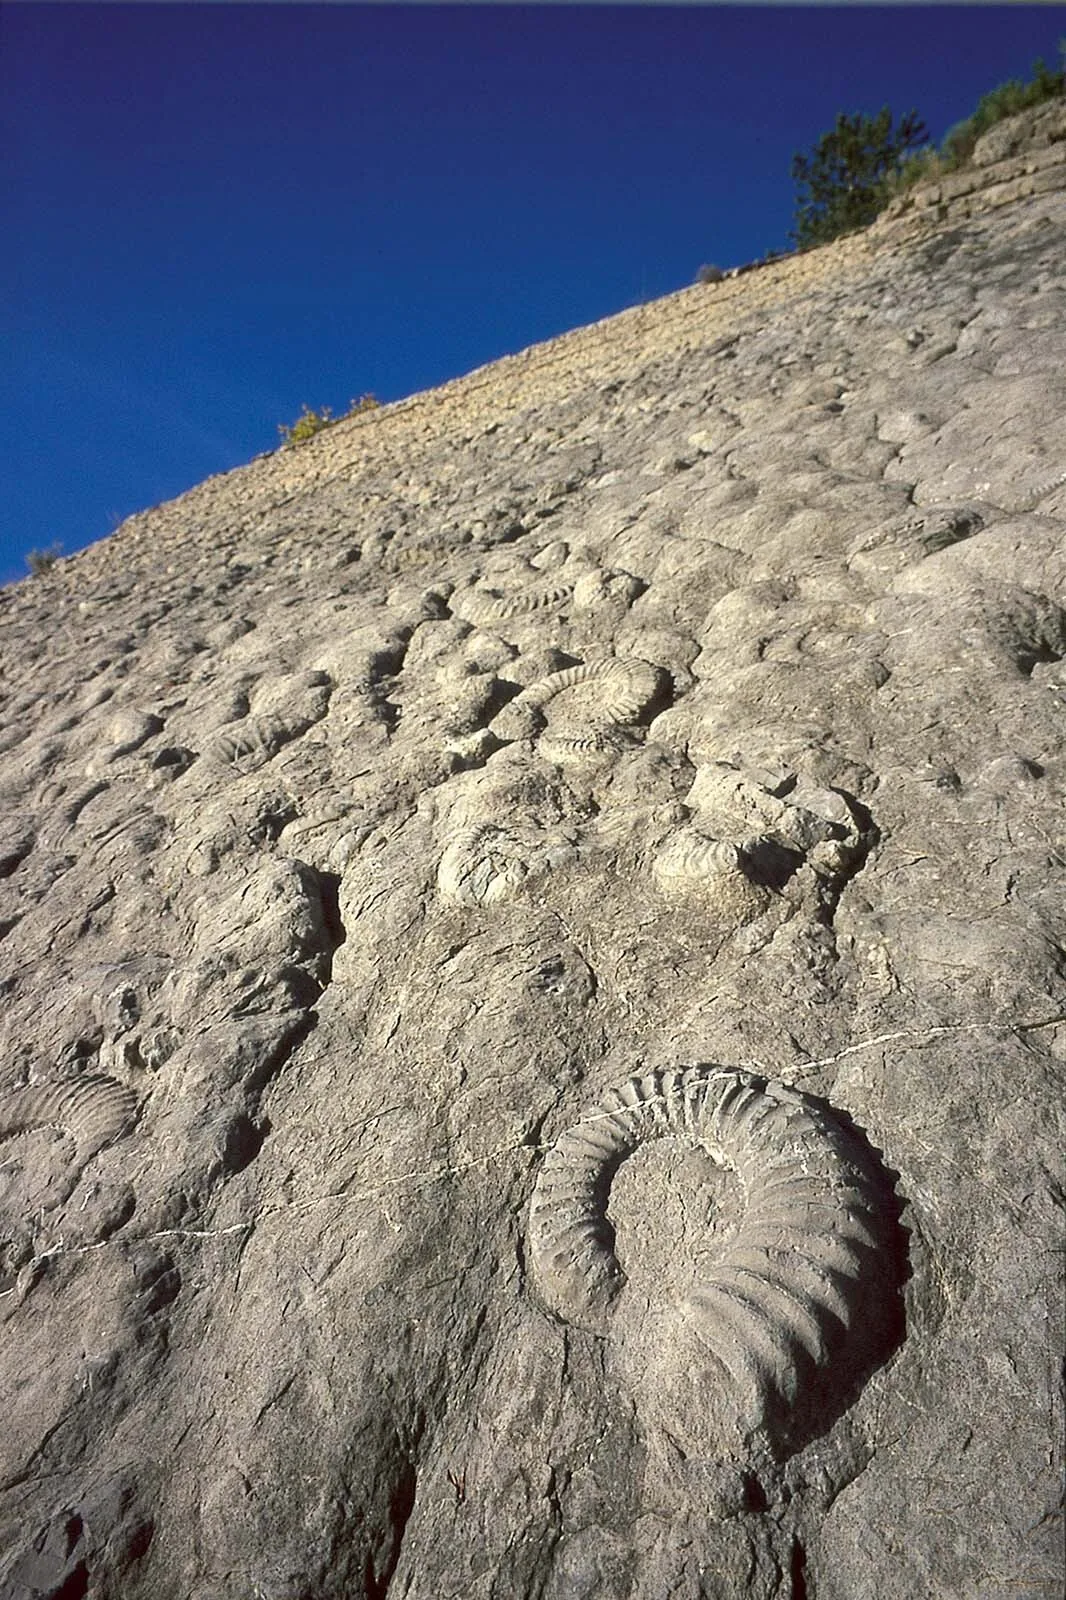 Vue générale de la dalle aux ammonites à Digne les Bains